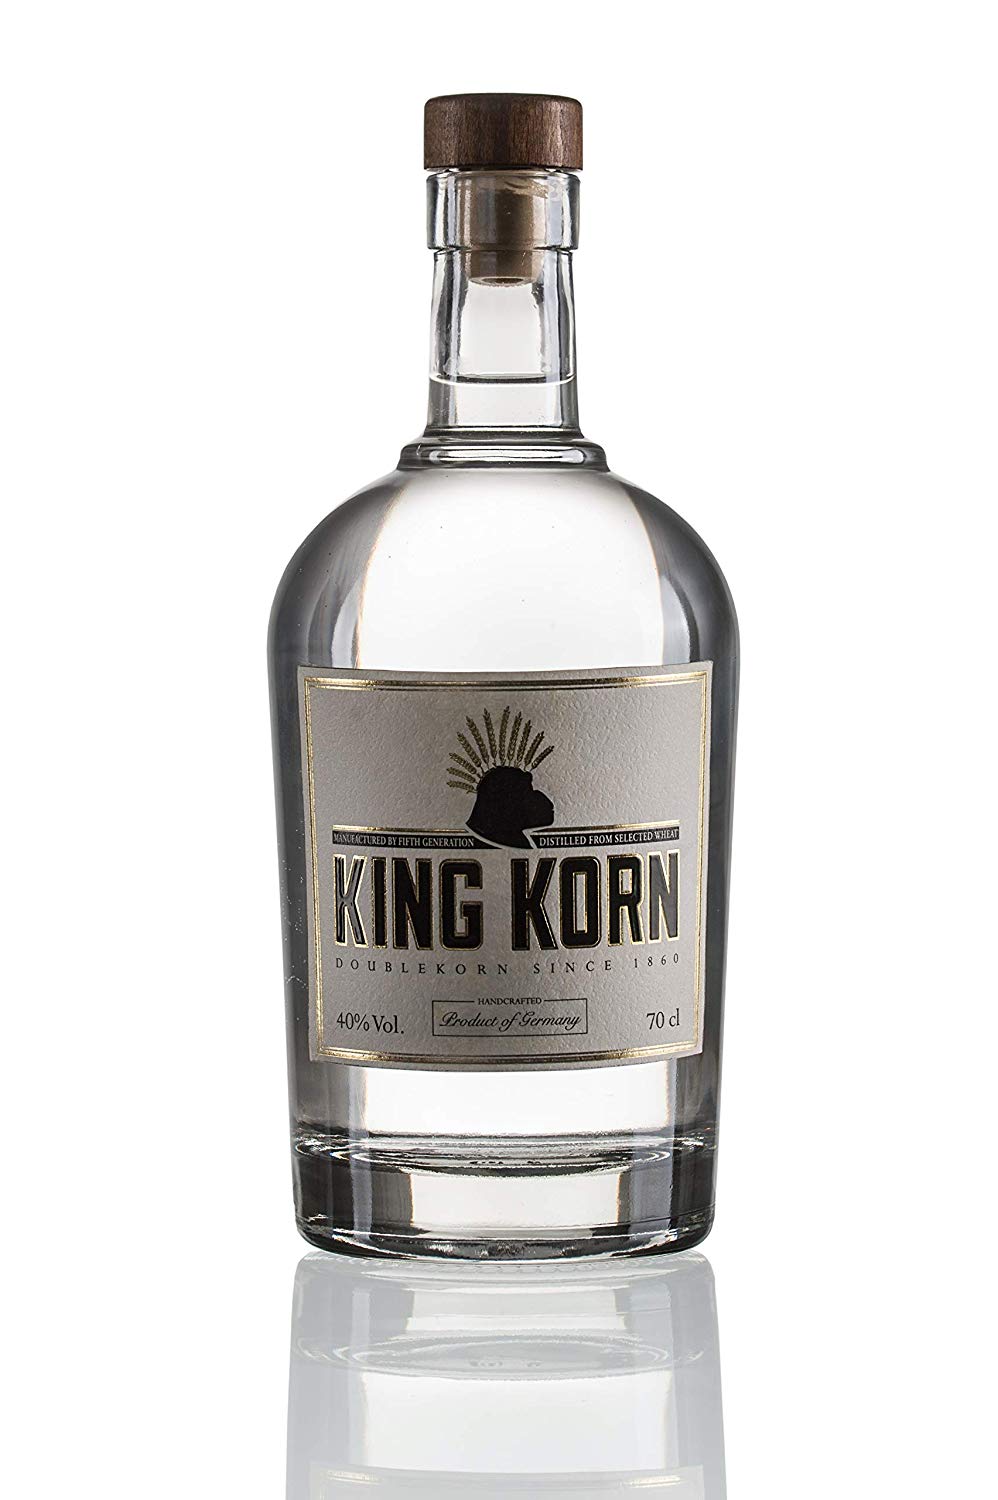 King Korn DoubleKorn Flasche 70cl aus Glas mit Korkenverschluss, nach unten verspiegelt